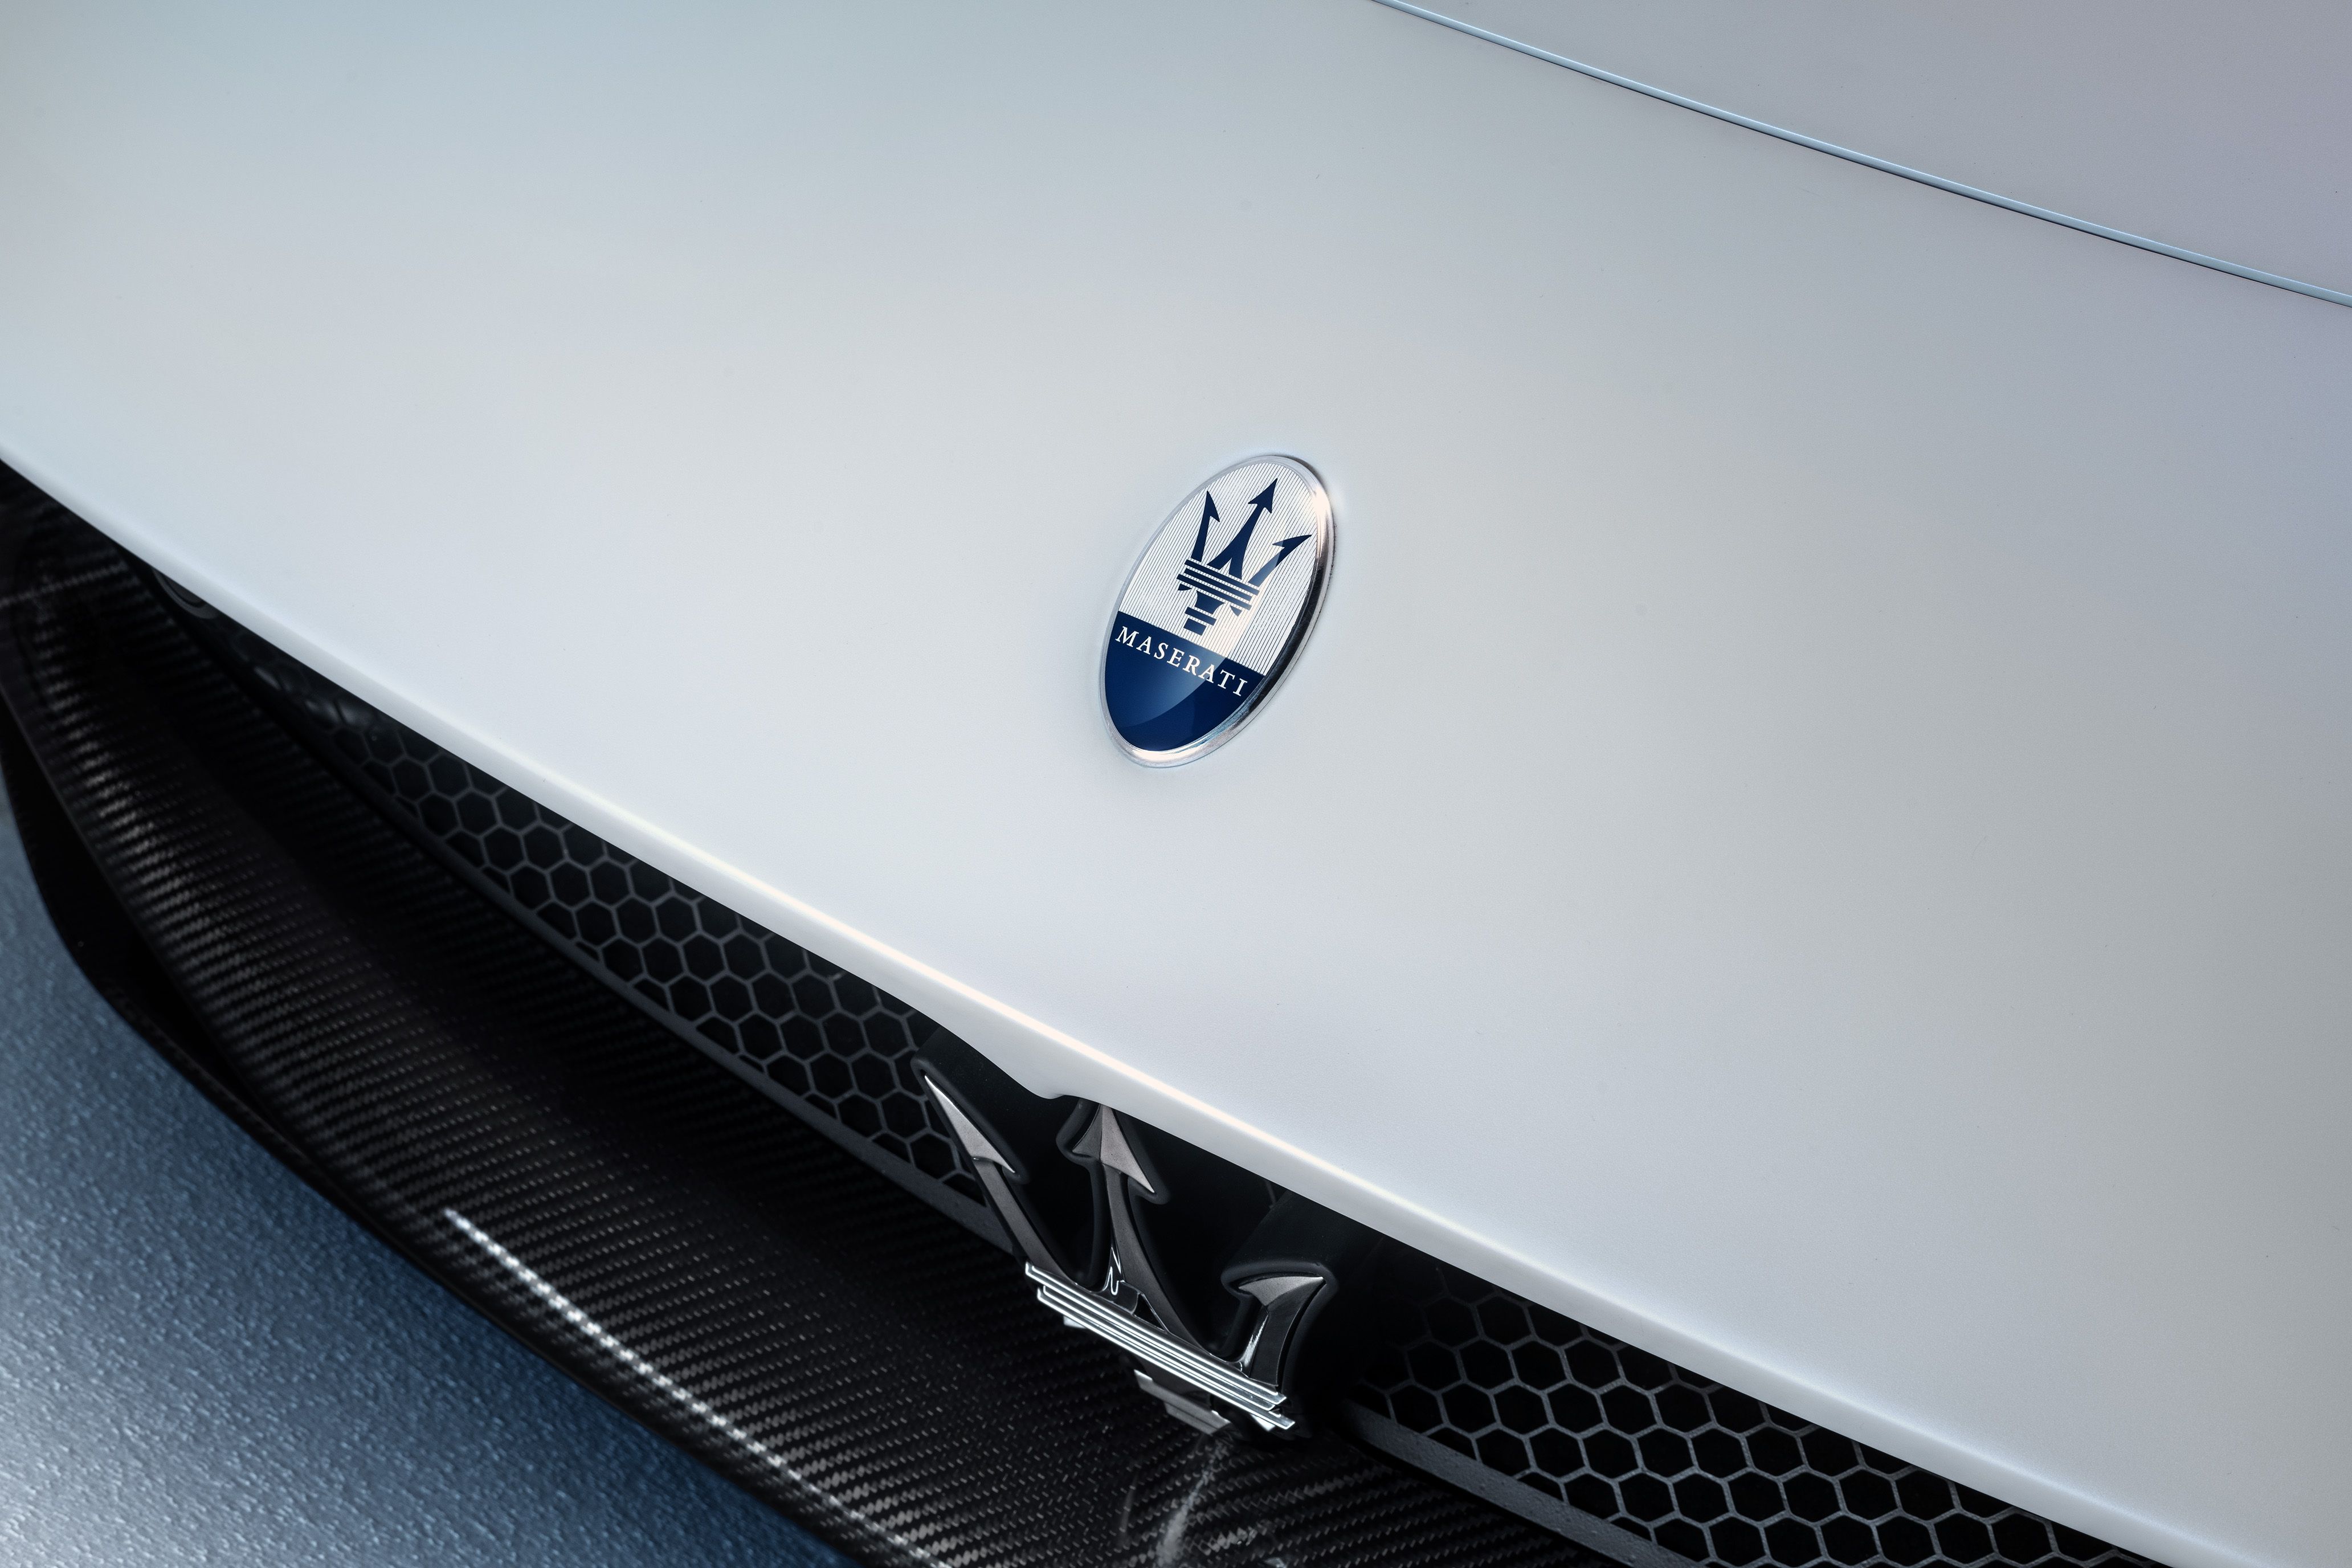 2021 Maserati MC20